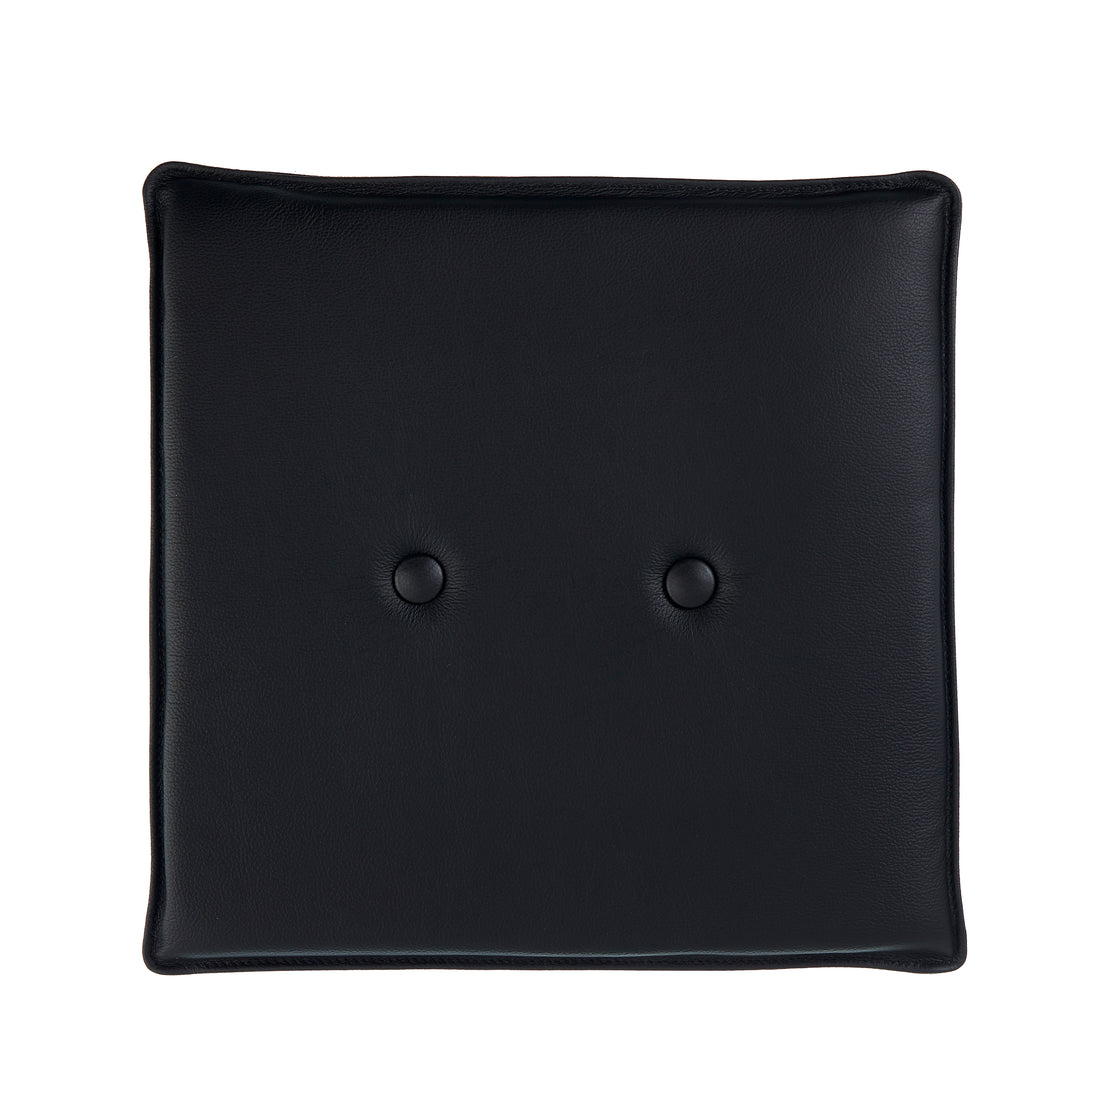 Almofada Universal 40x40 cm em couro preto com botões